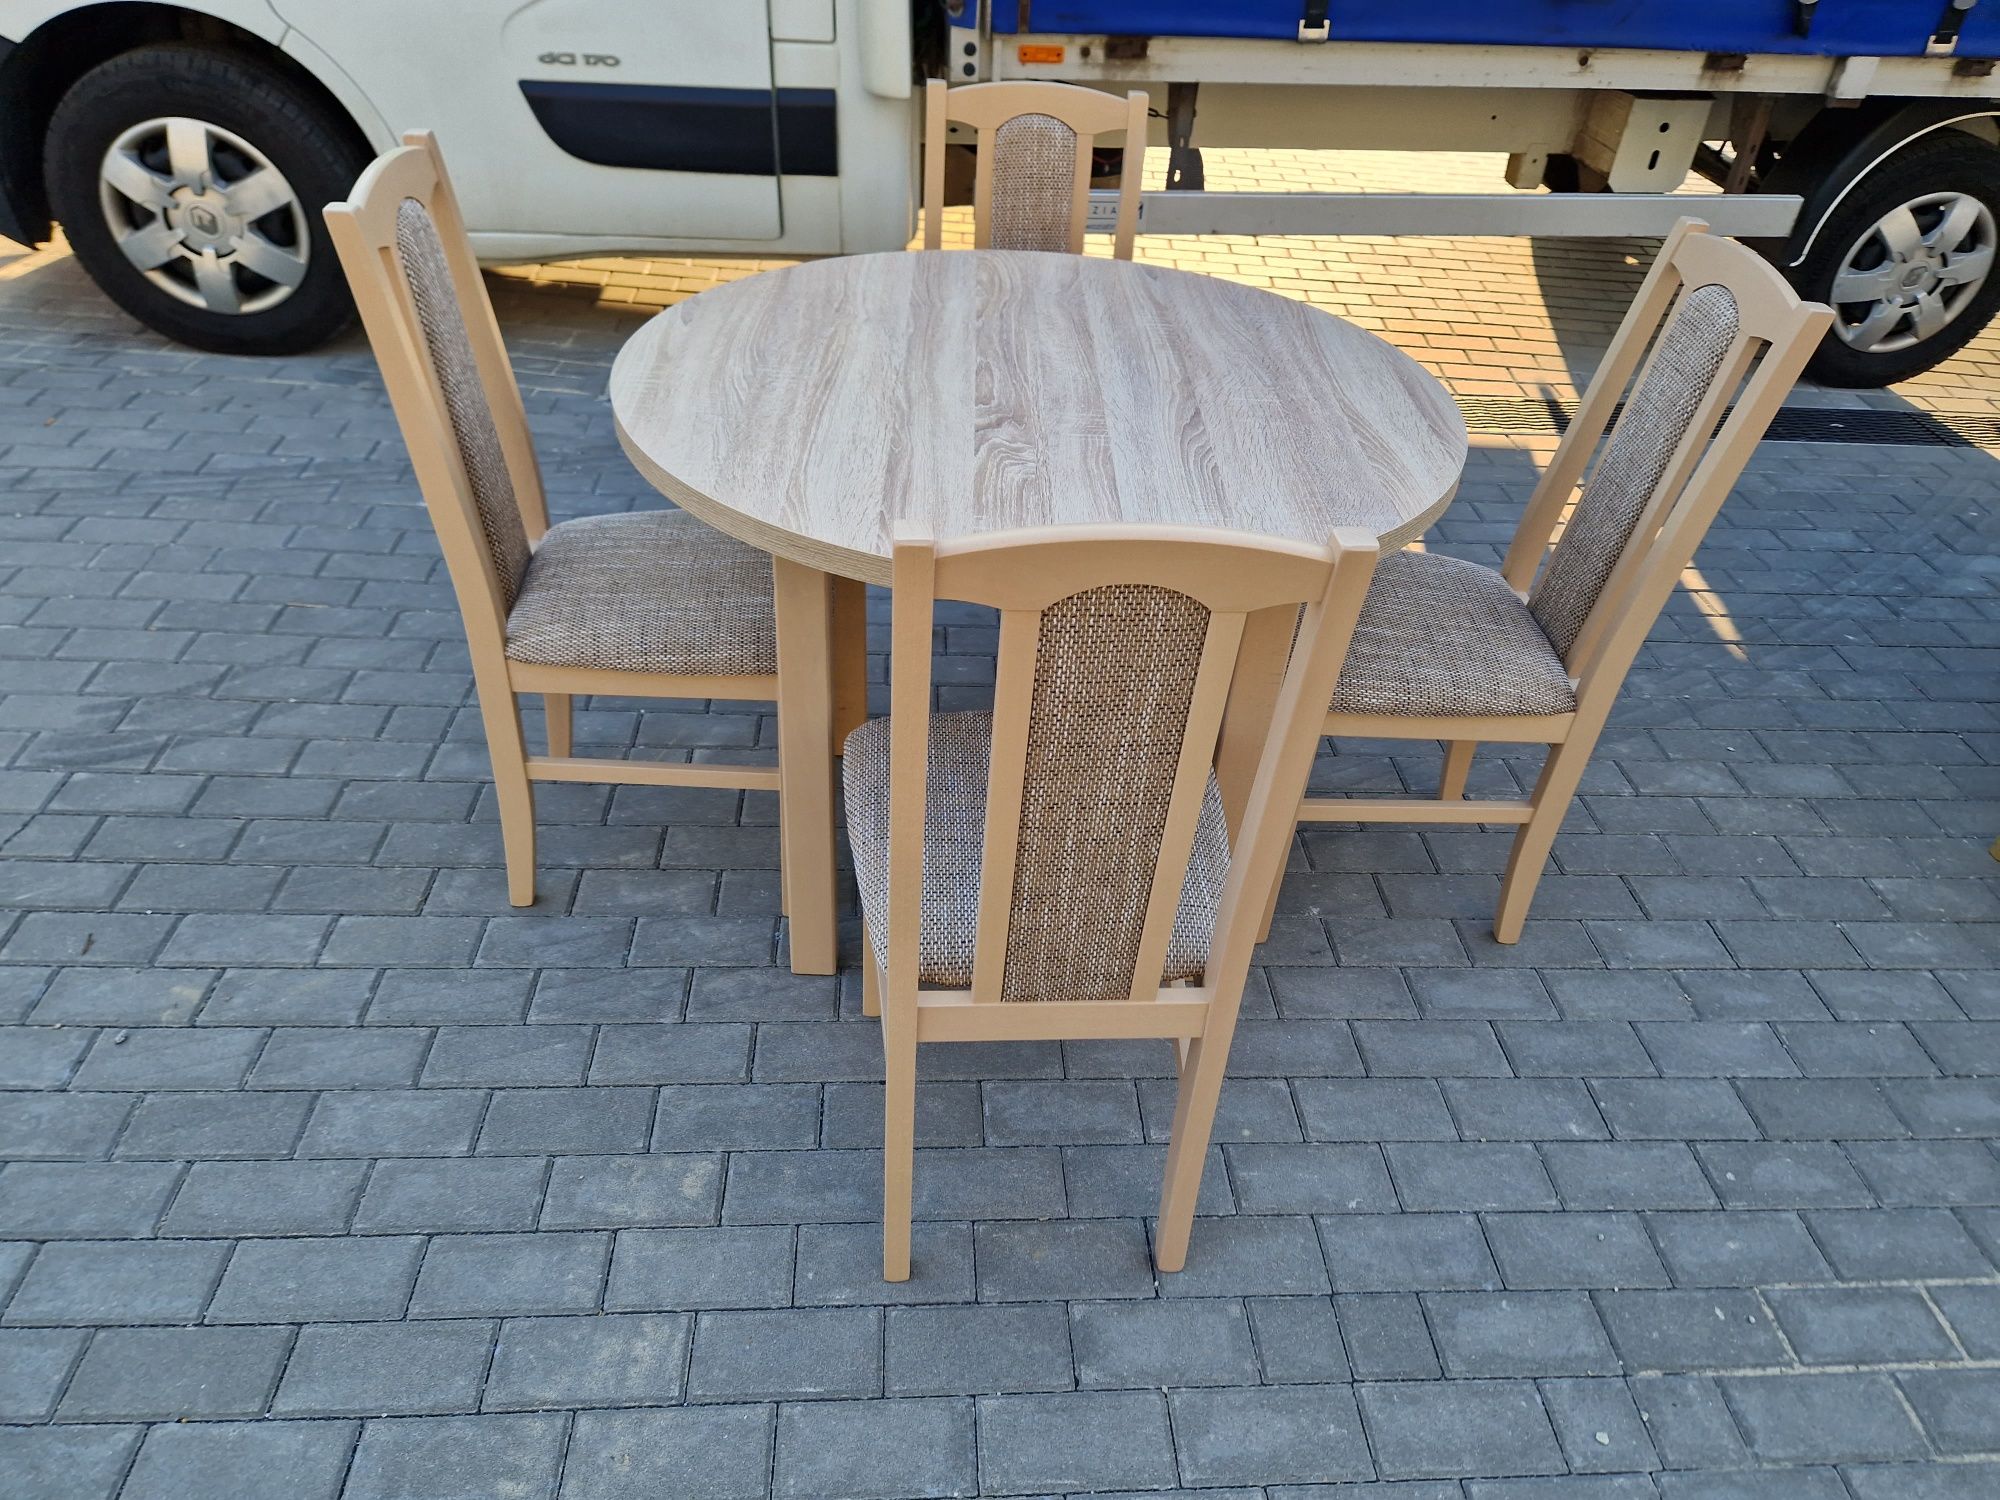 Nowe : Stół okrągły + 4 krzesła, sonoma + cappuccino , dostawa PL